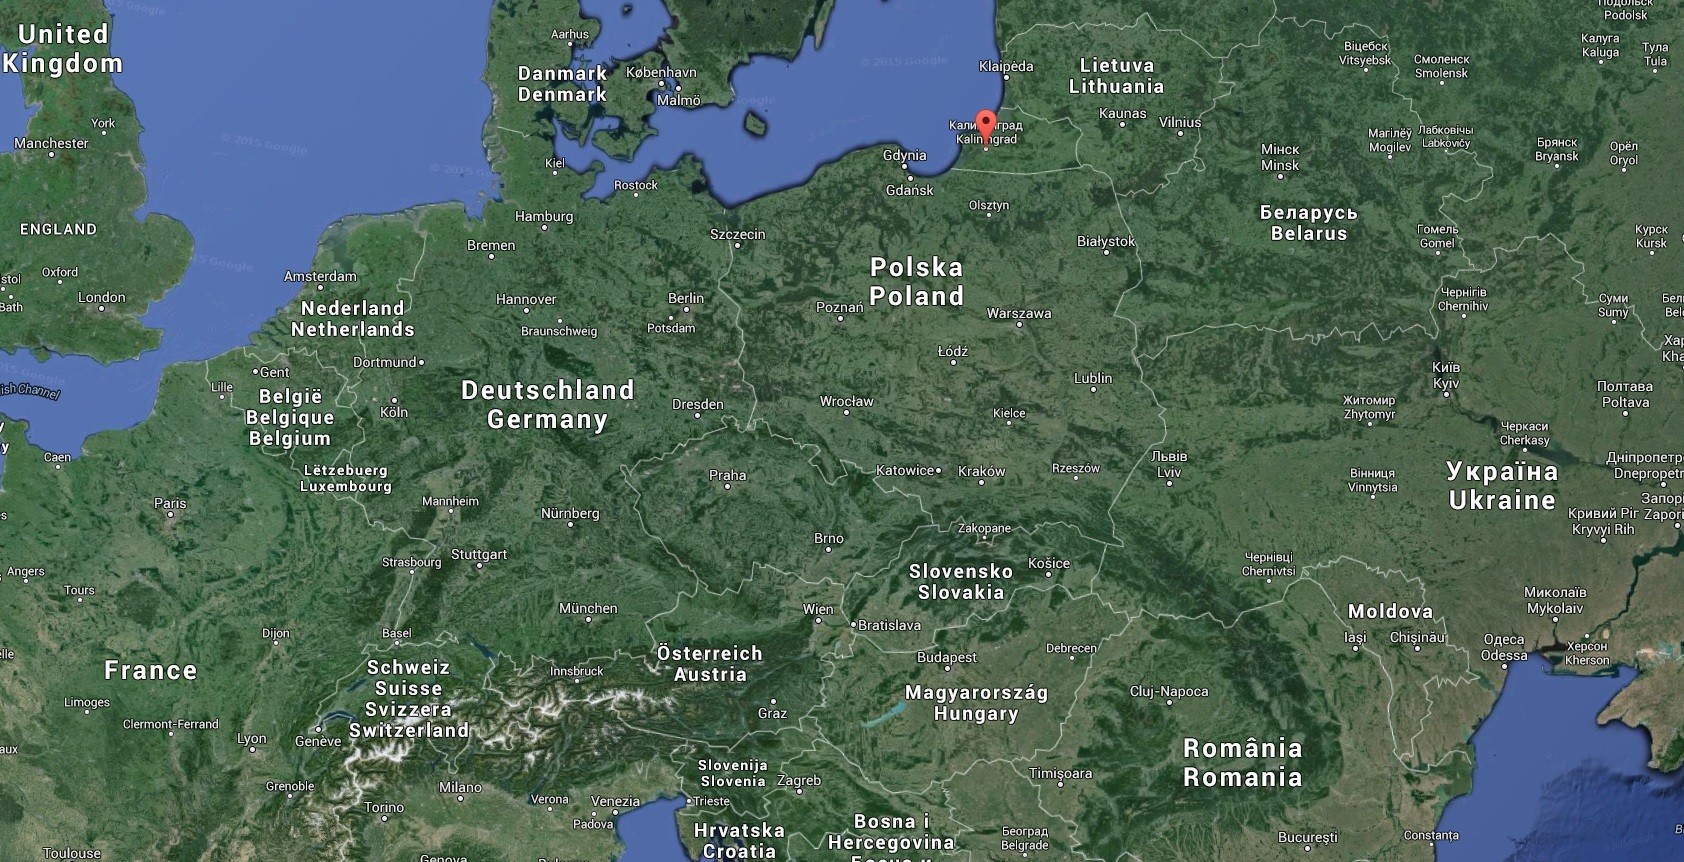 Des hackers publient un plan d’annexion de Kaliningrad par l’OTAN